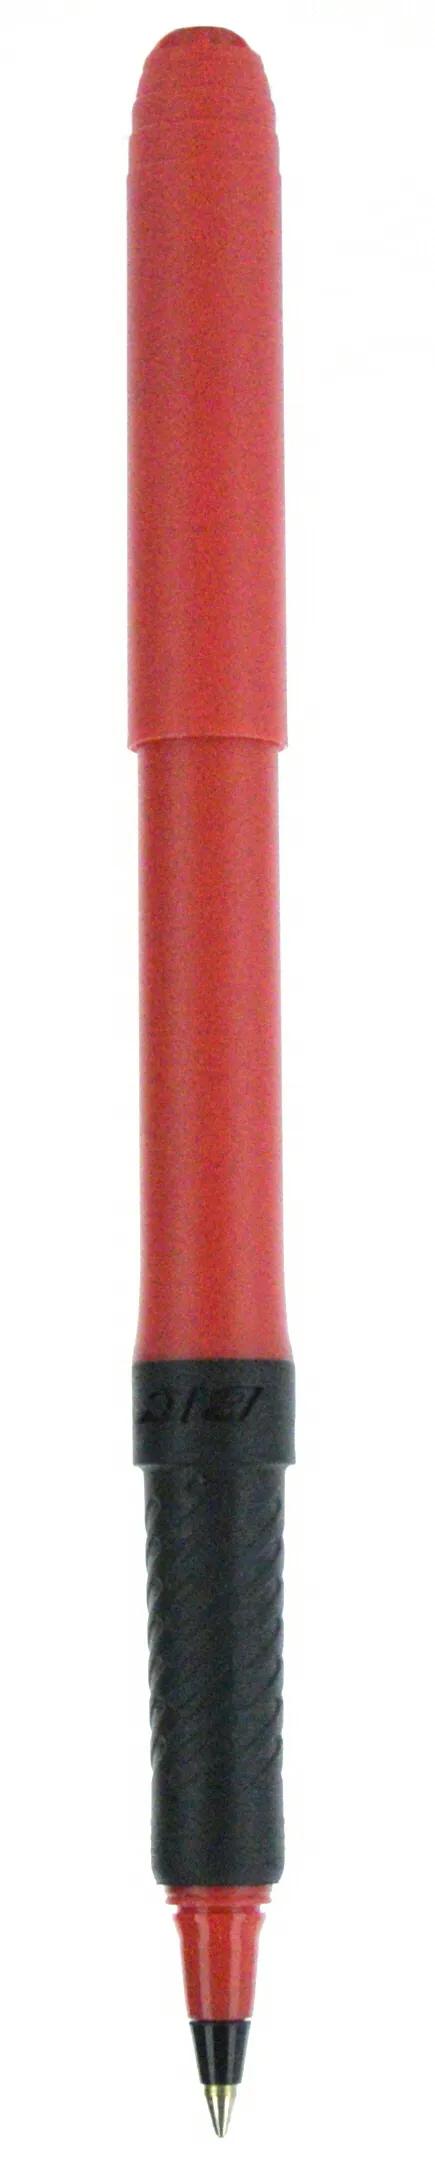 BIC® Grip Roller Pen 66 of 147